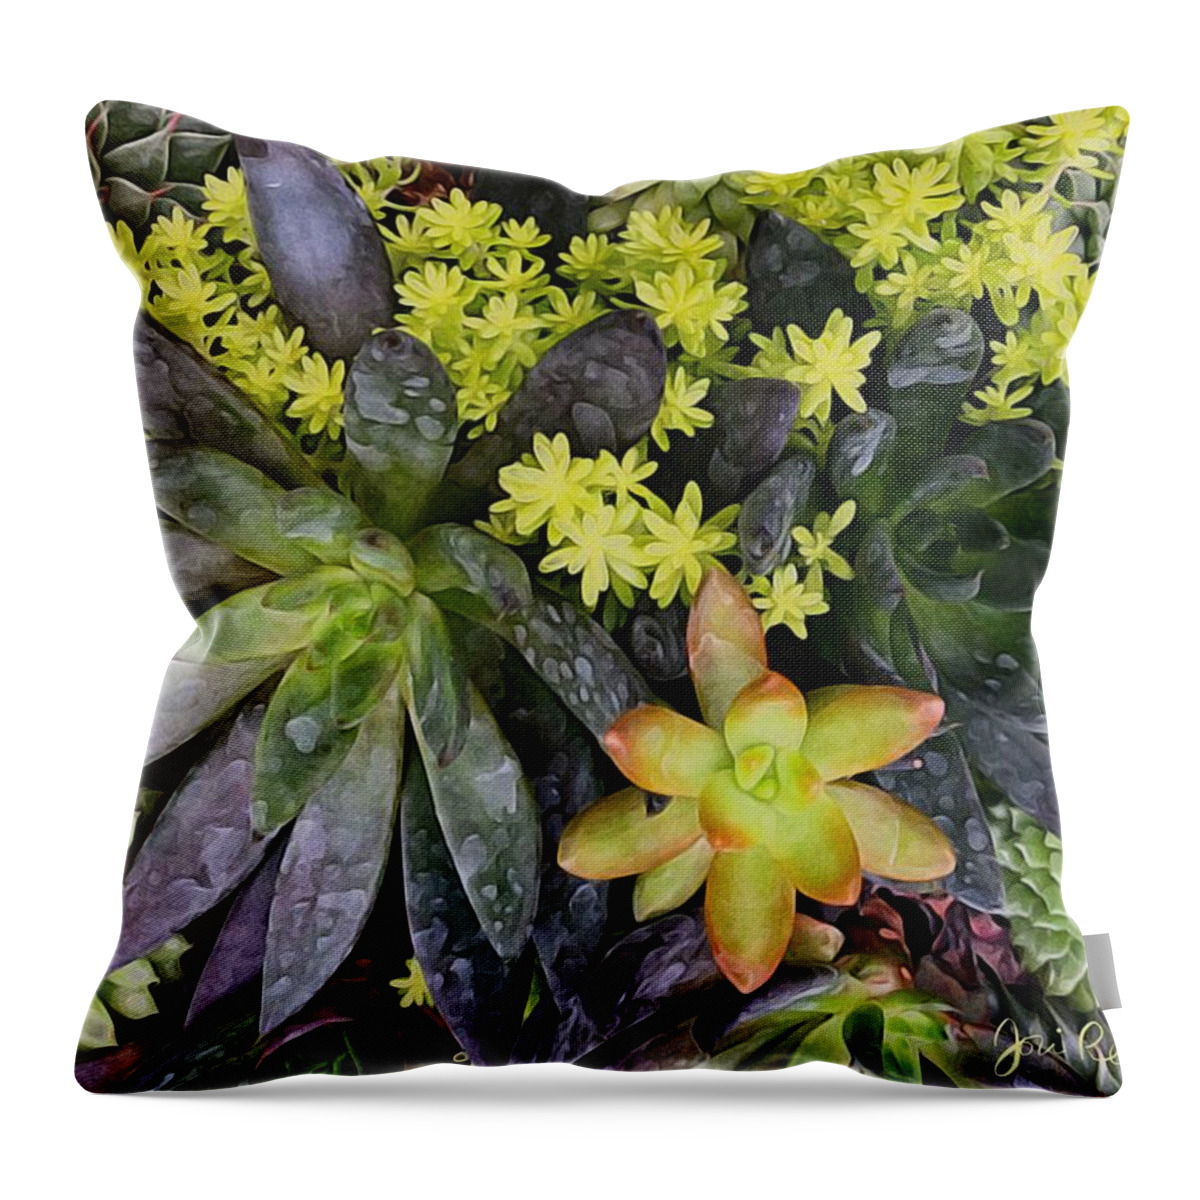 Brushstroke Throw Pillow featuring the photograph Succulent Garden by Jori Reijonen